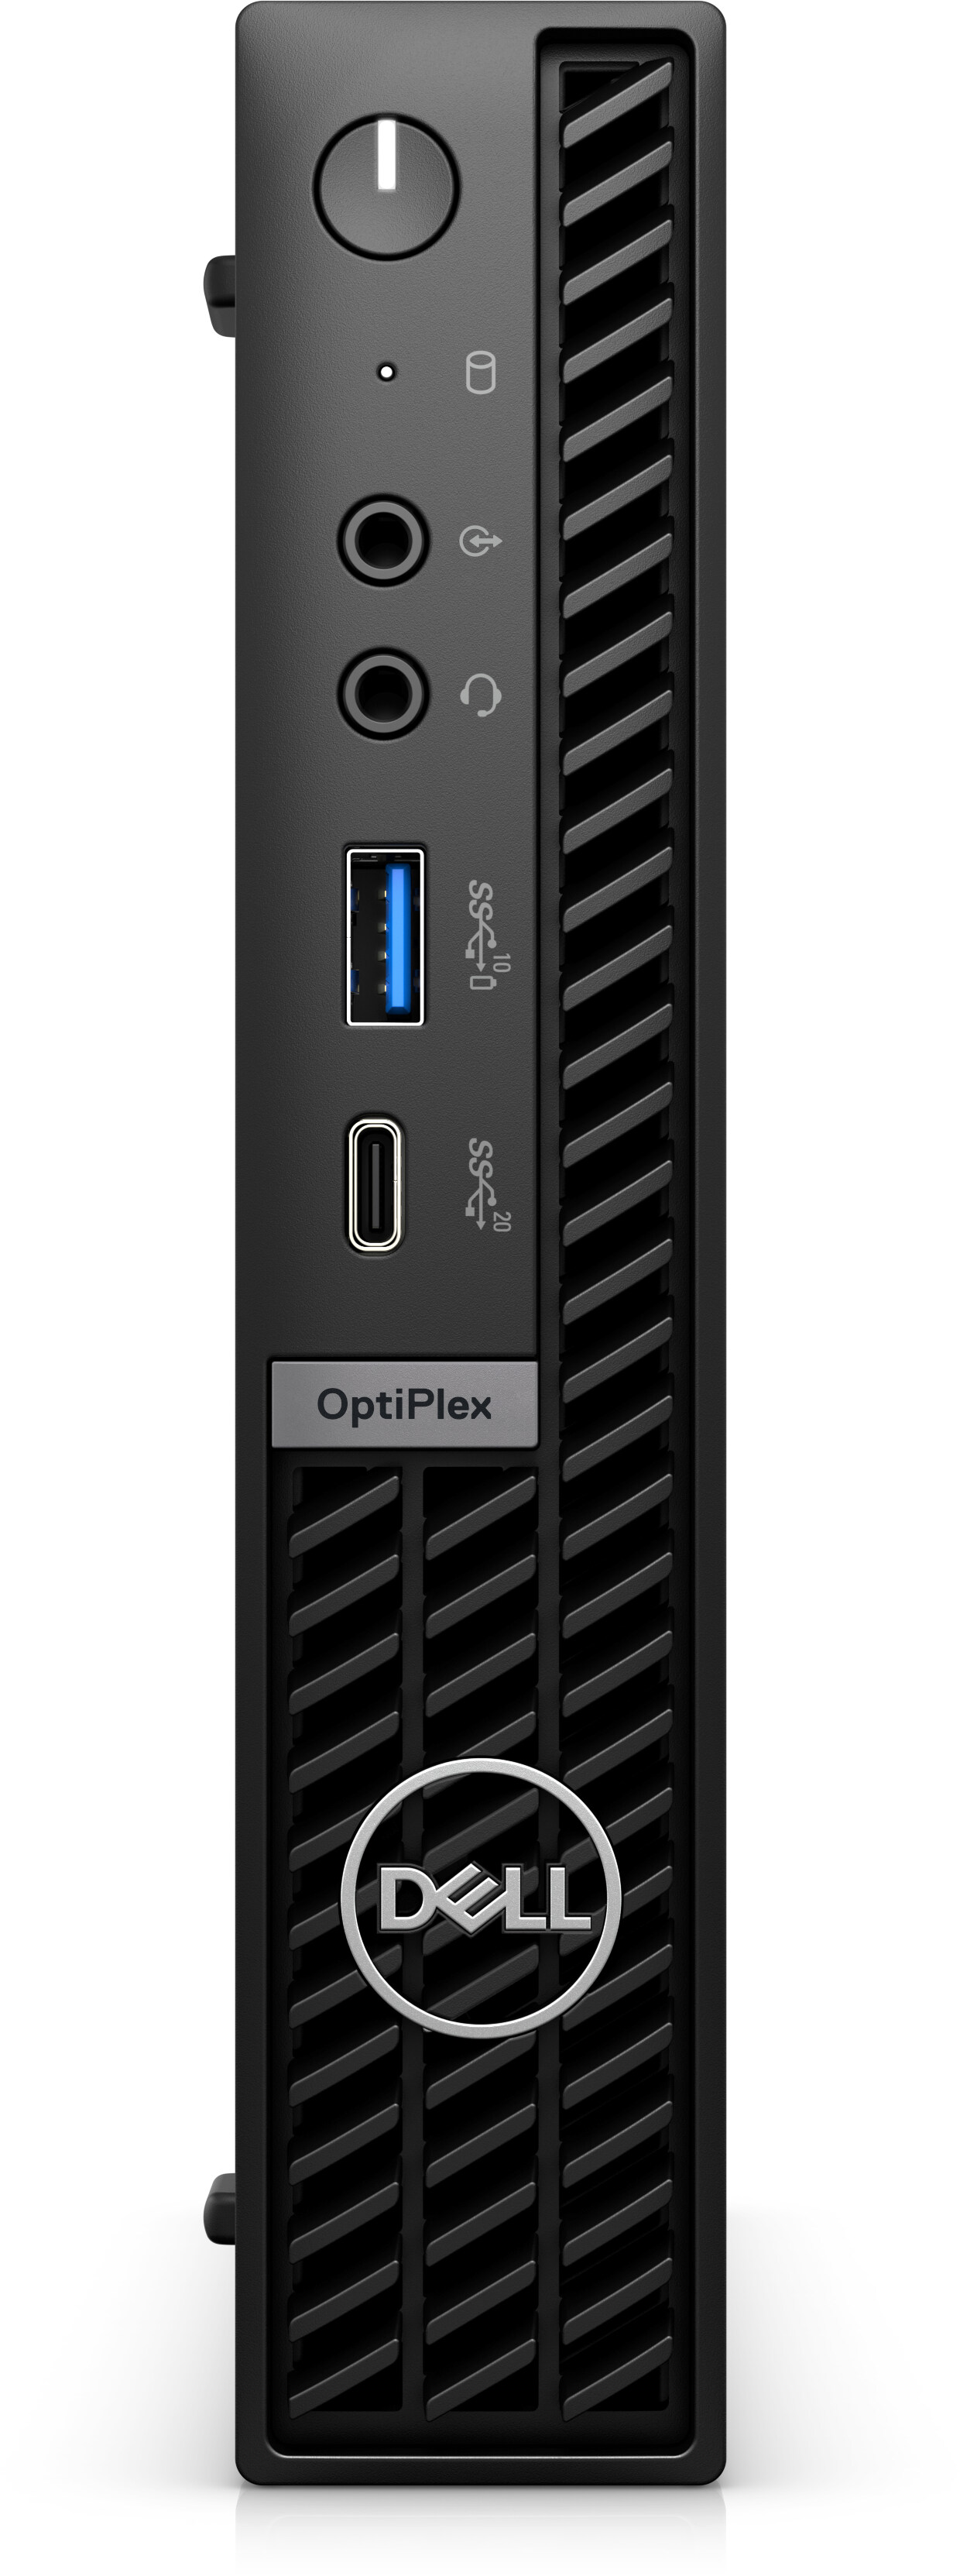 OptiPlex Micro Form Factor Plus